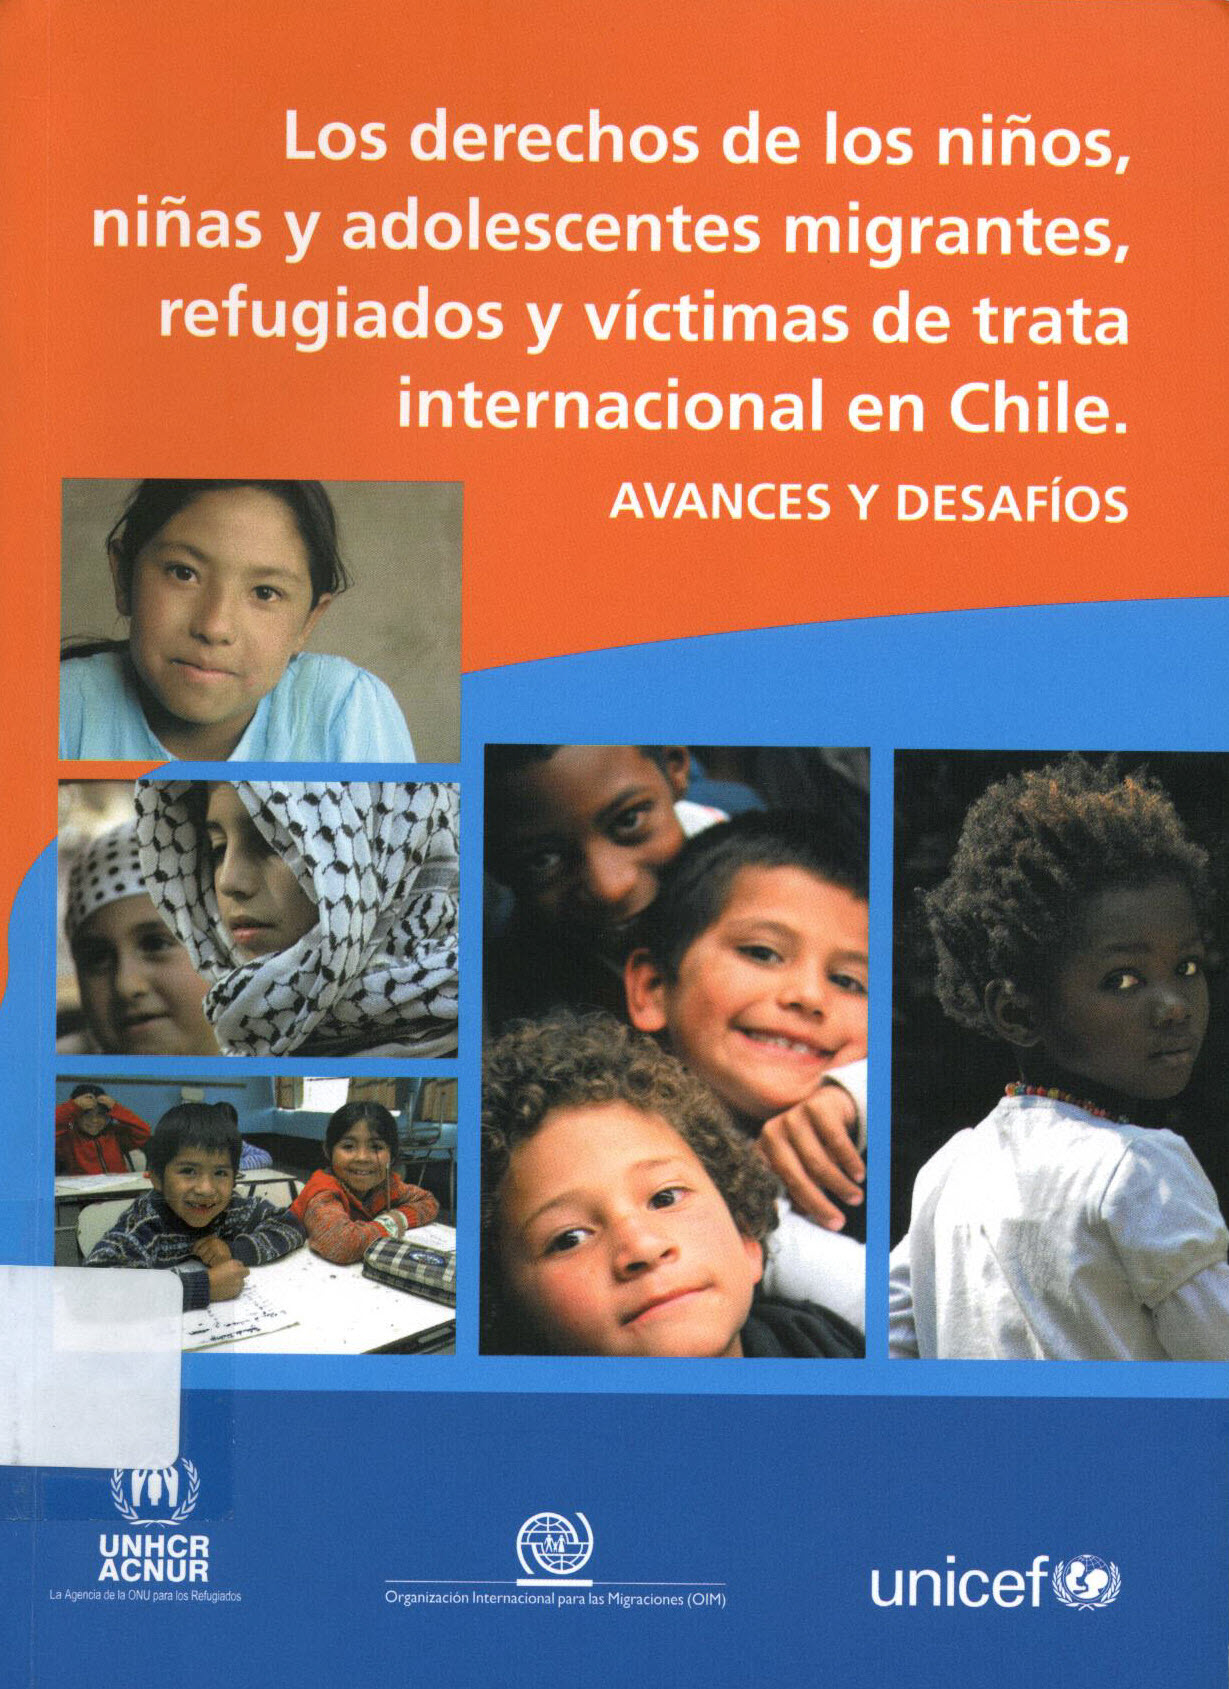 Los derechos de los niños, niñas y adolescentes migrantes, refugiados y víctimas de trata internacional en Chile. Avances y desafíos